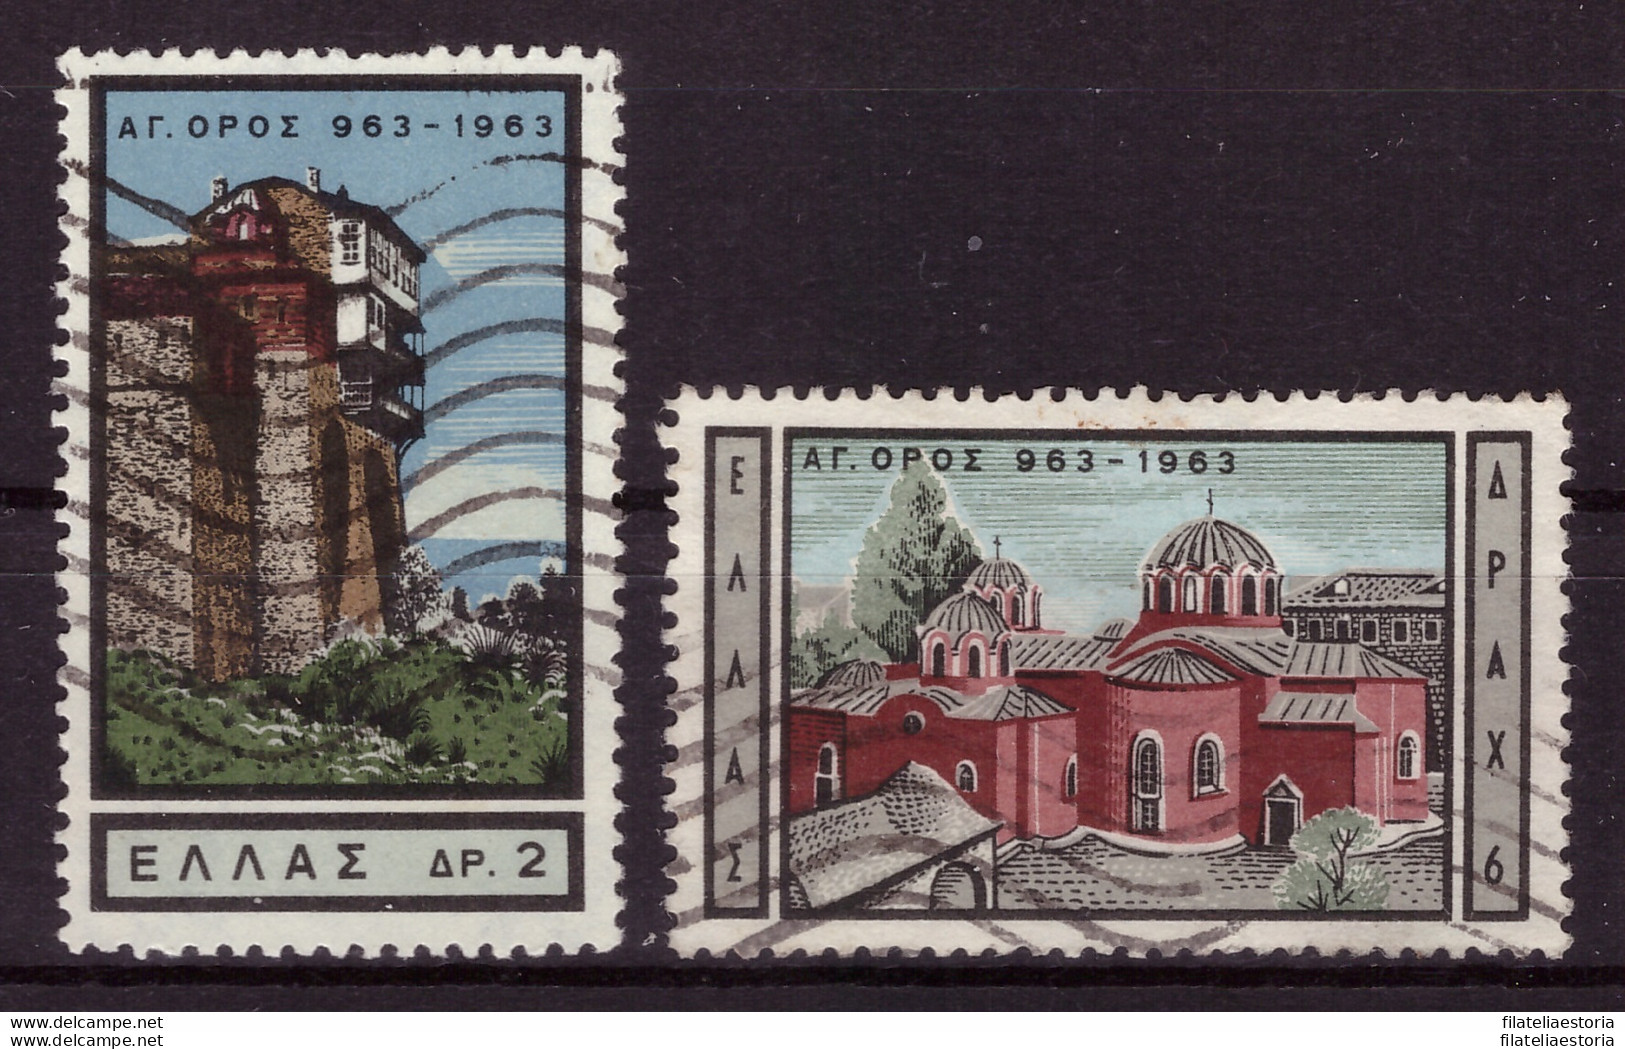 Grèce 1963 - Oblitéré - Cloîtres - Michel Nr. 830 834 (gre1003) - Oblitérés